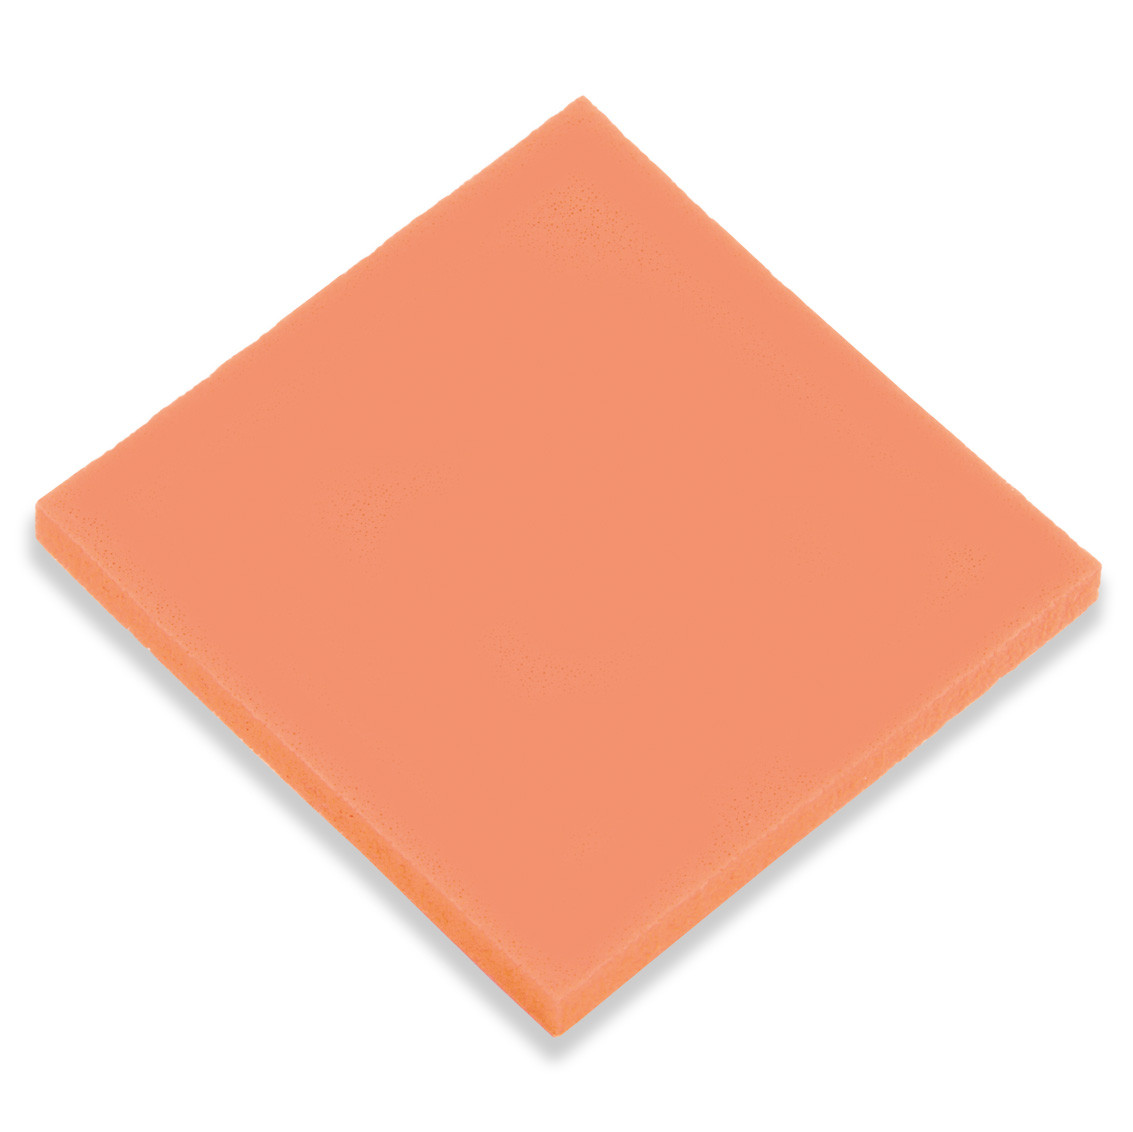 Neolatex Orange Shore 29 densité 0,21 g/cm³